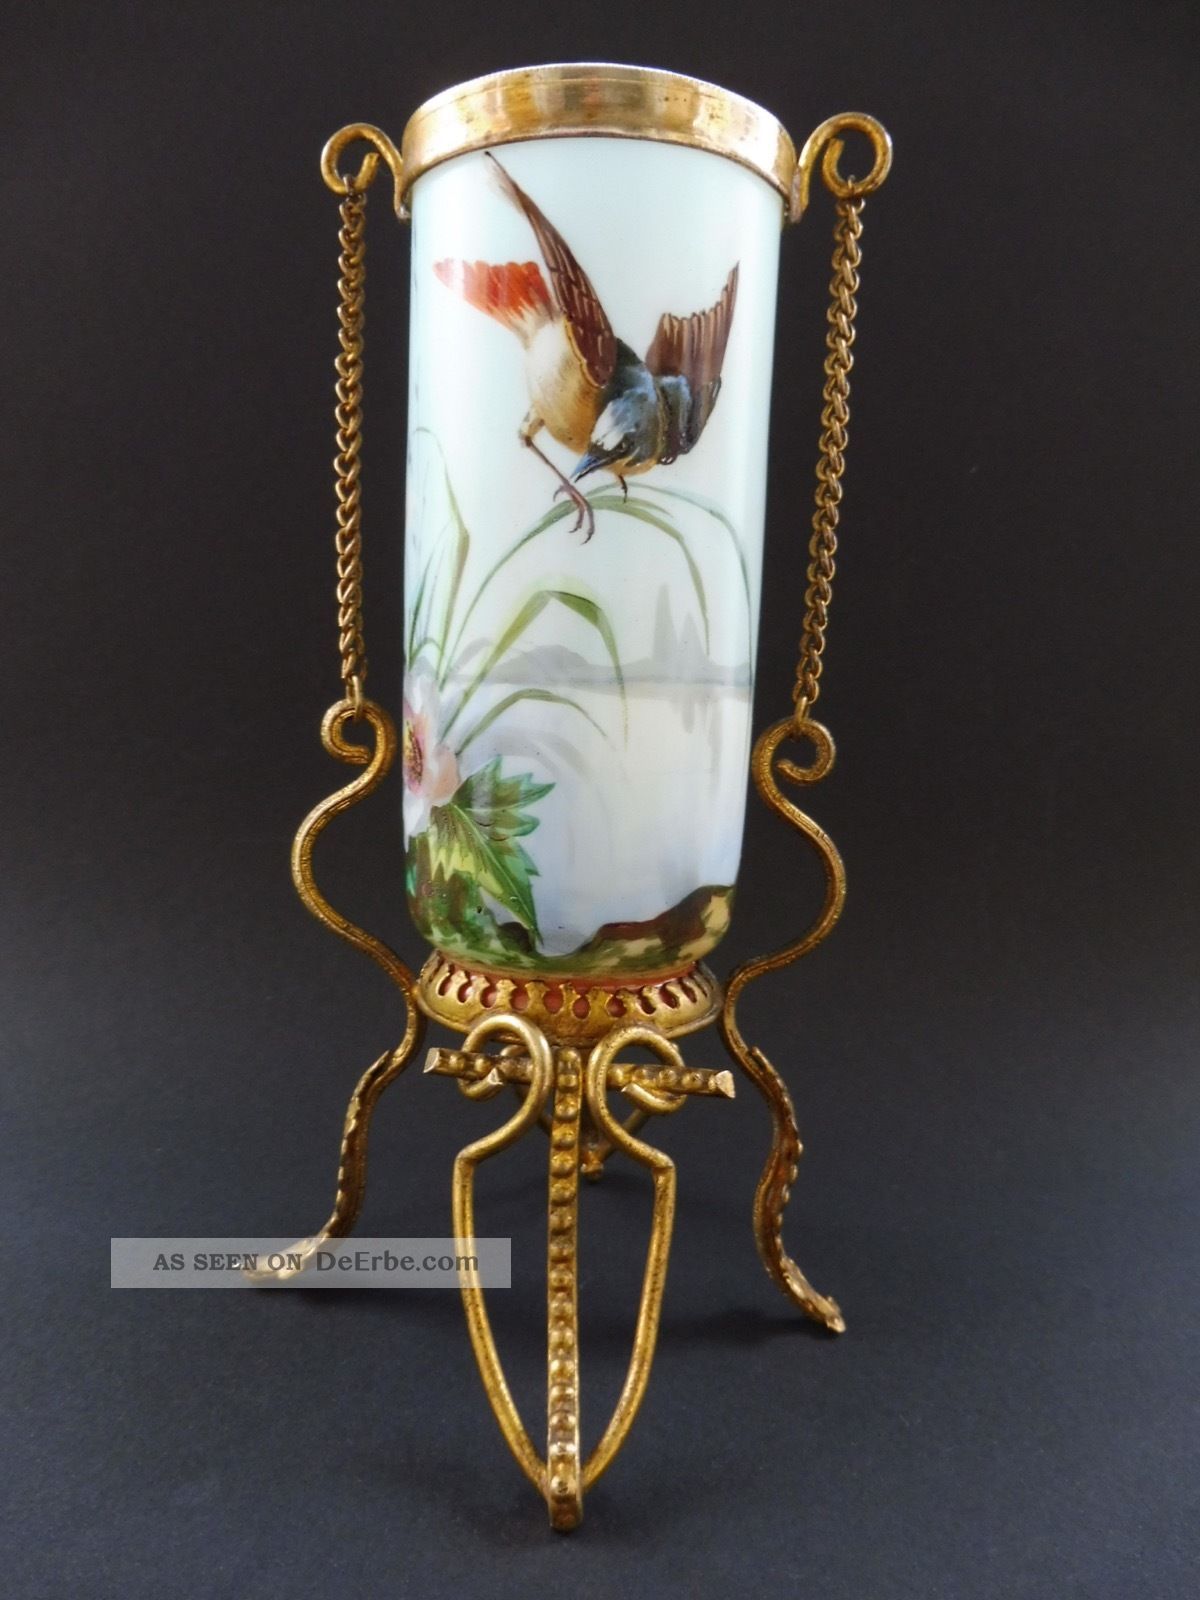 Jugendstil Vase Vergoldet Montierung Vogel Emailmalerei Art Nouveau Bird 3gg Wmf 1890-1919, Jugendstil Bild